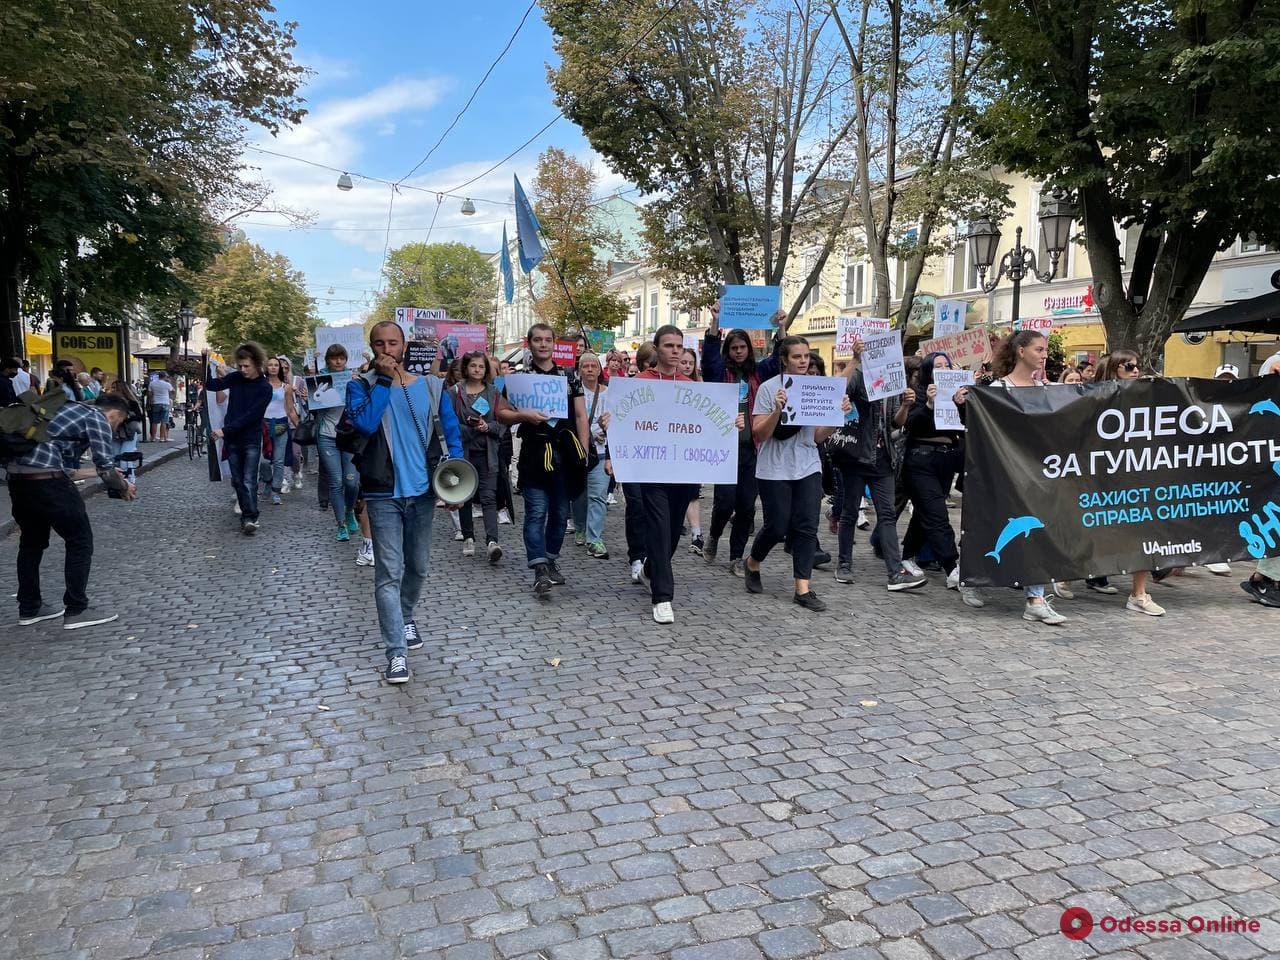 «Защита слабых — дело сильных»: в Одессе прошел марш против эксплуатации и жестокого обращения с животными (фото, видео)